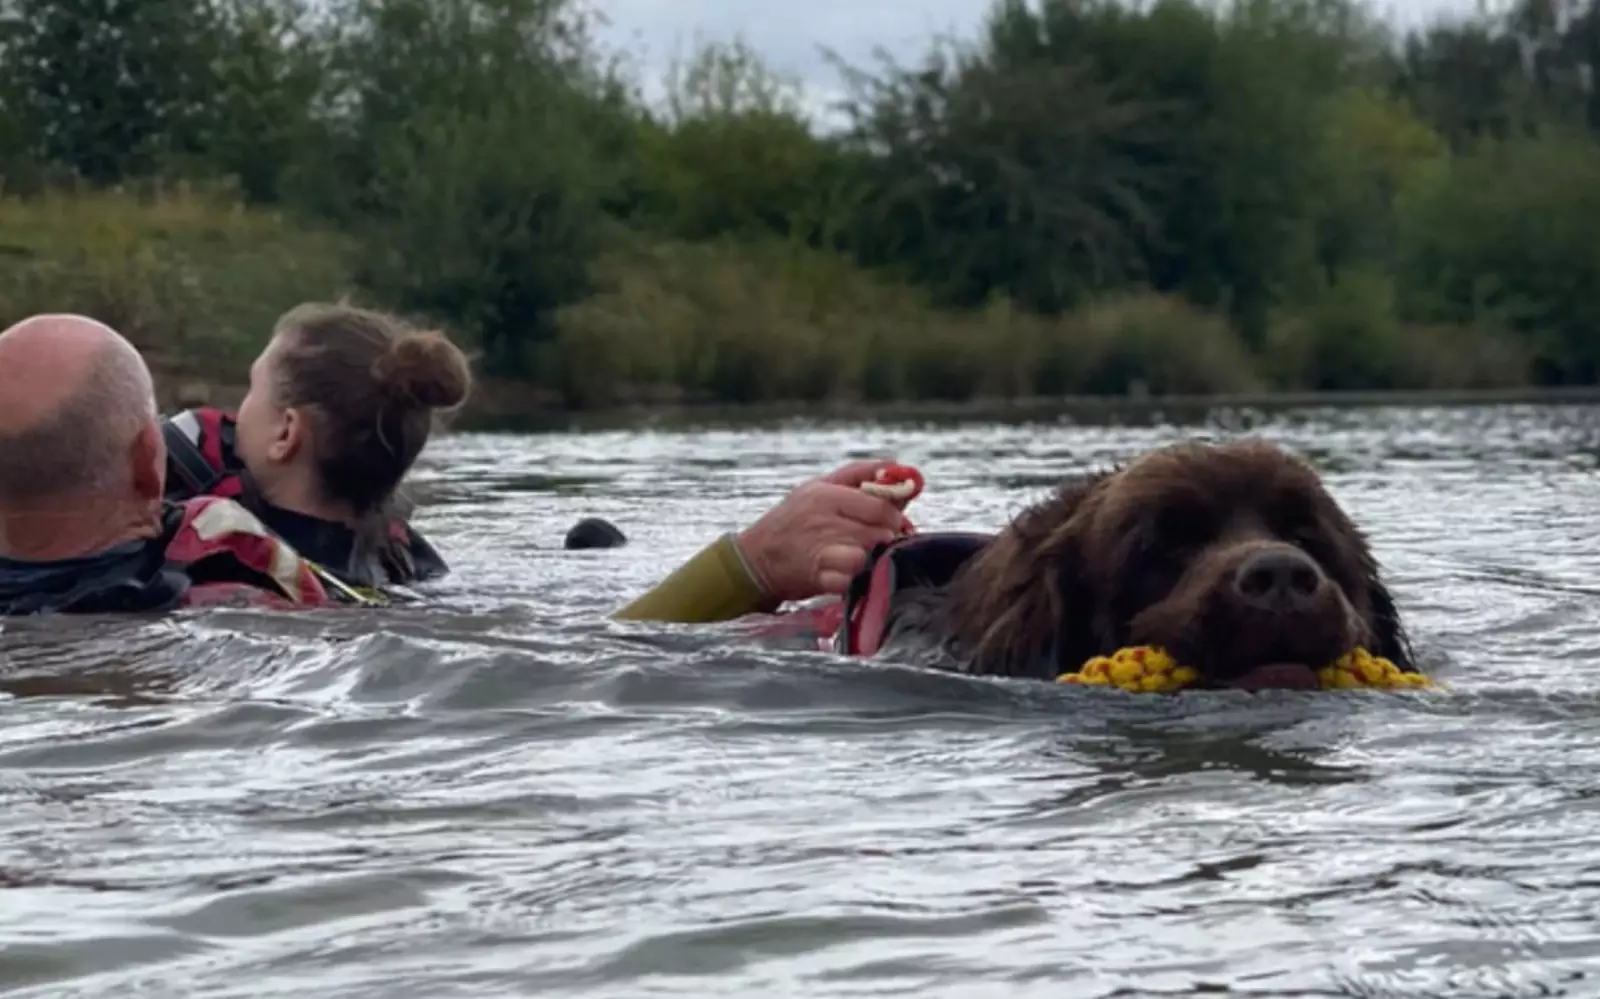 Водная терапия с собаками проходит очень просто: клиенты надевают гидрокостюм, вместе с собакой заходят в водоем и начинают плавать, держась за лохматого инструктора.